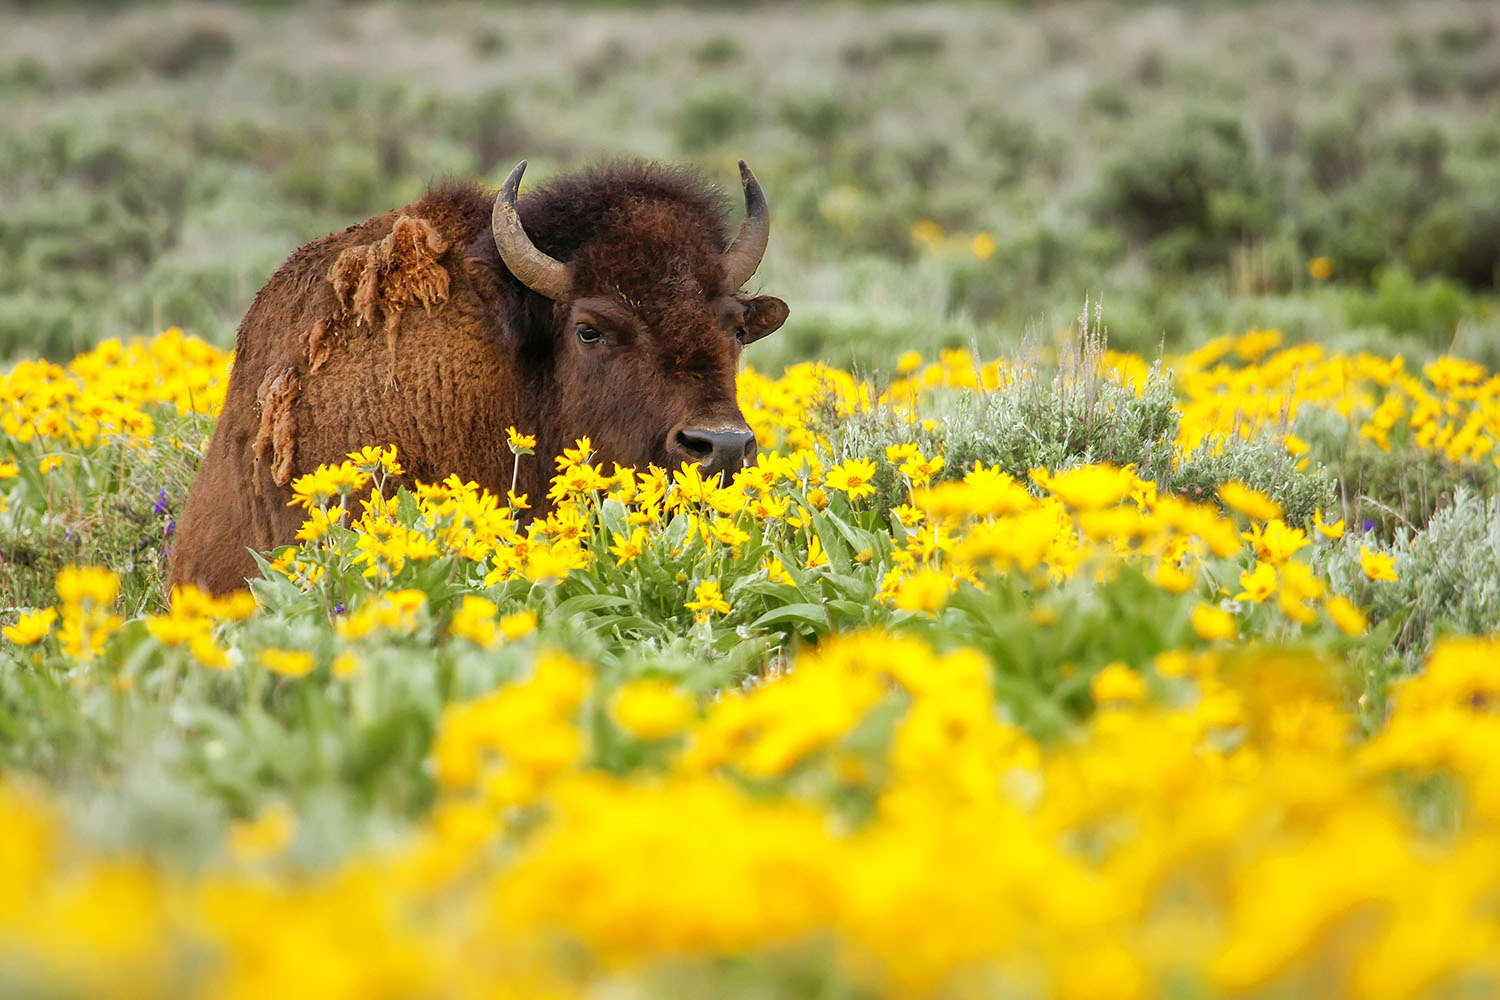 Buffalo in a field of flowers